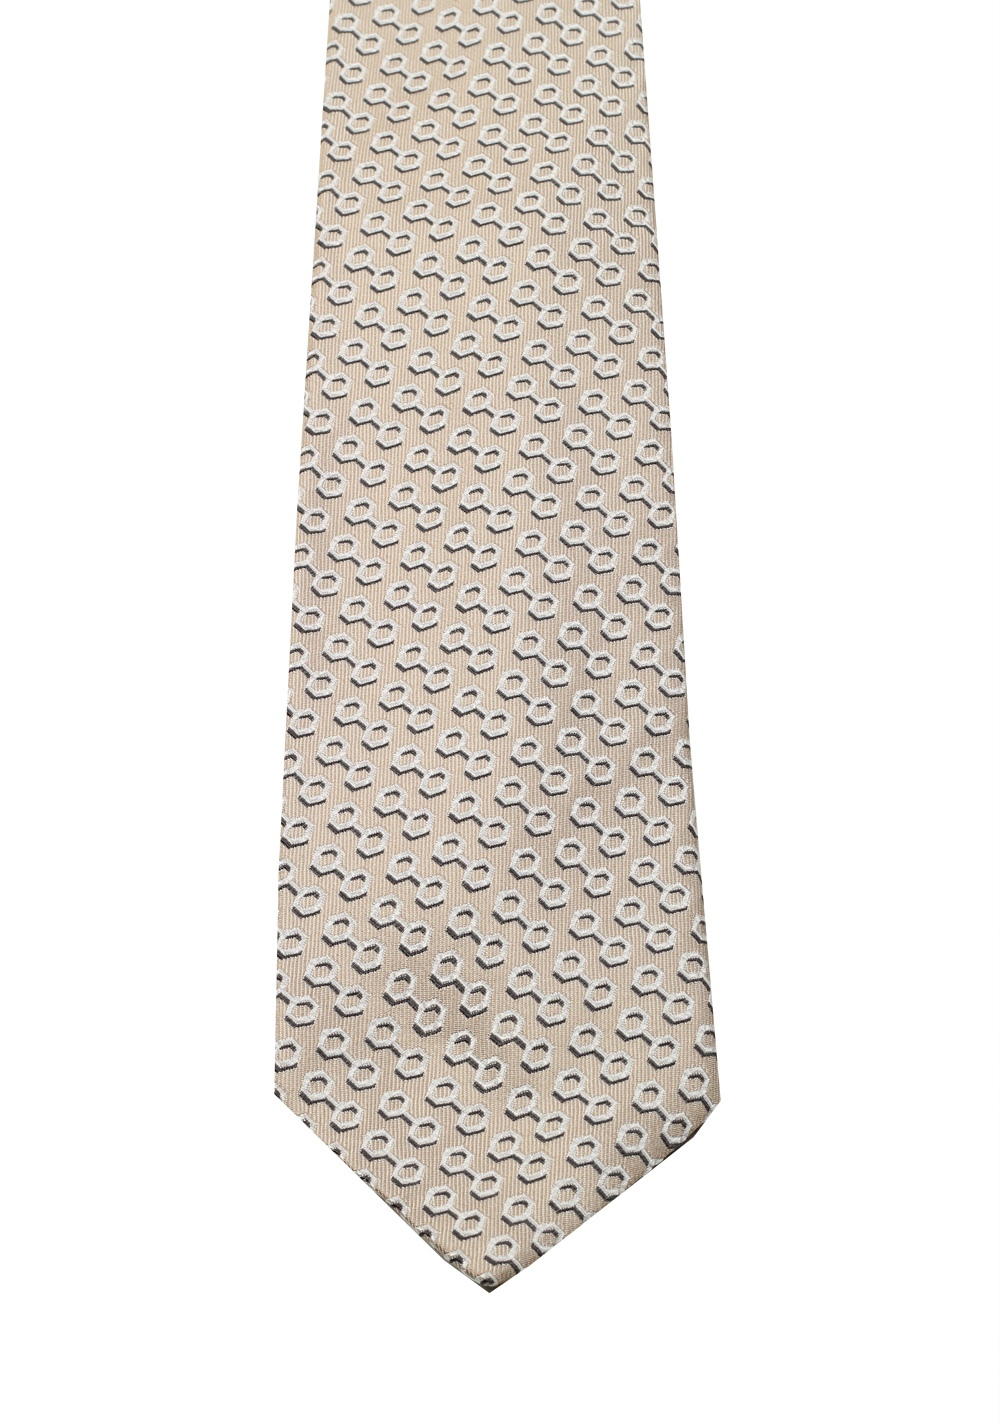 Gucci Beige Patterned Tie | Costume Limité